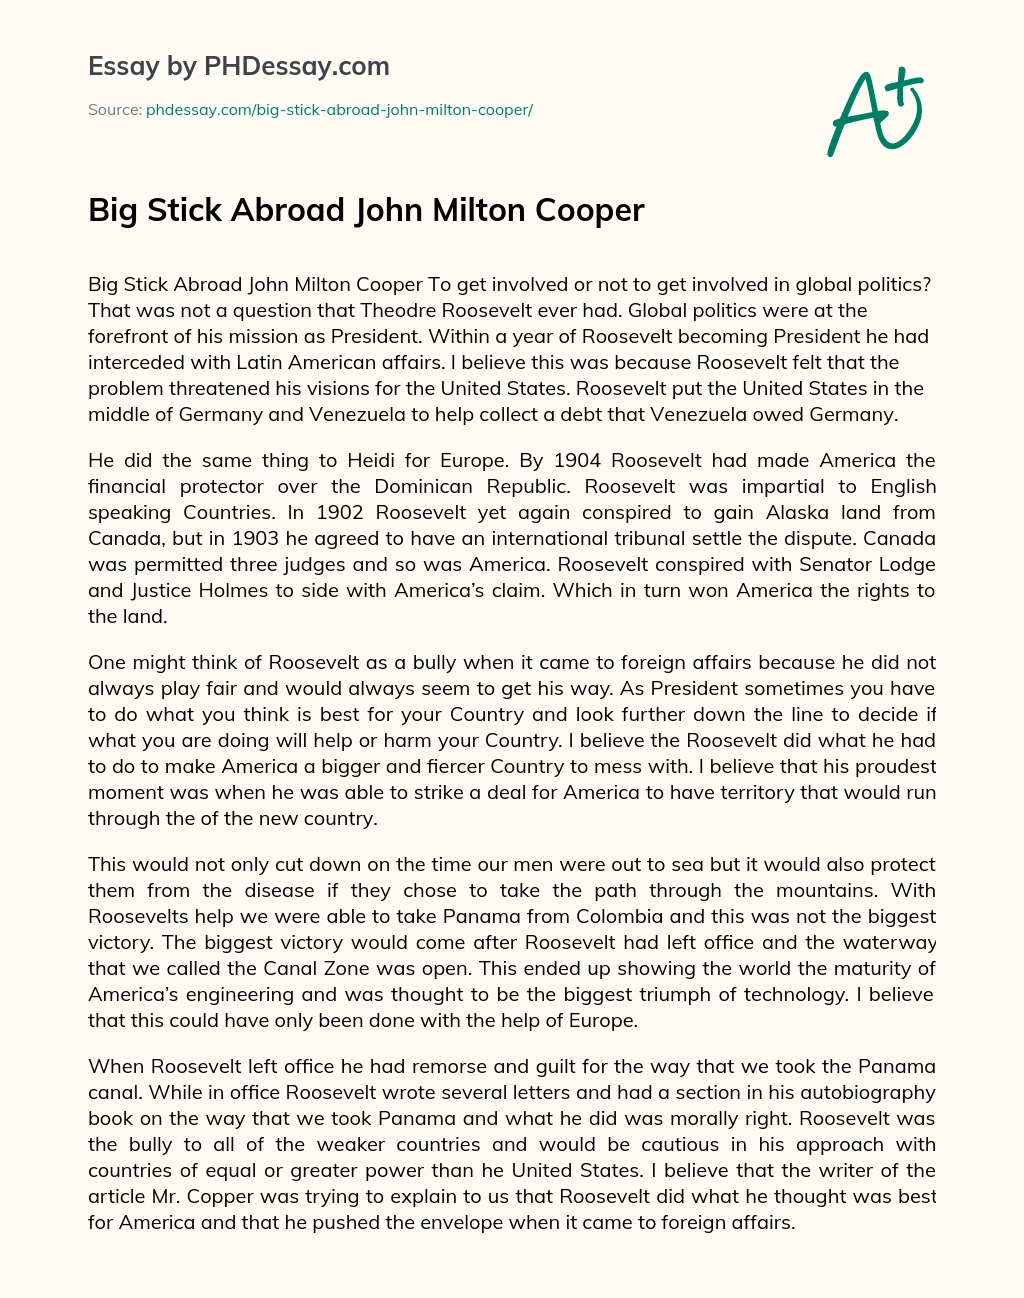 Big Stick Abroad John Milton Cooper essay